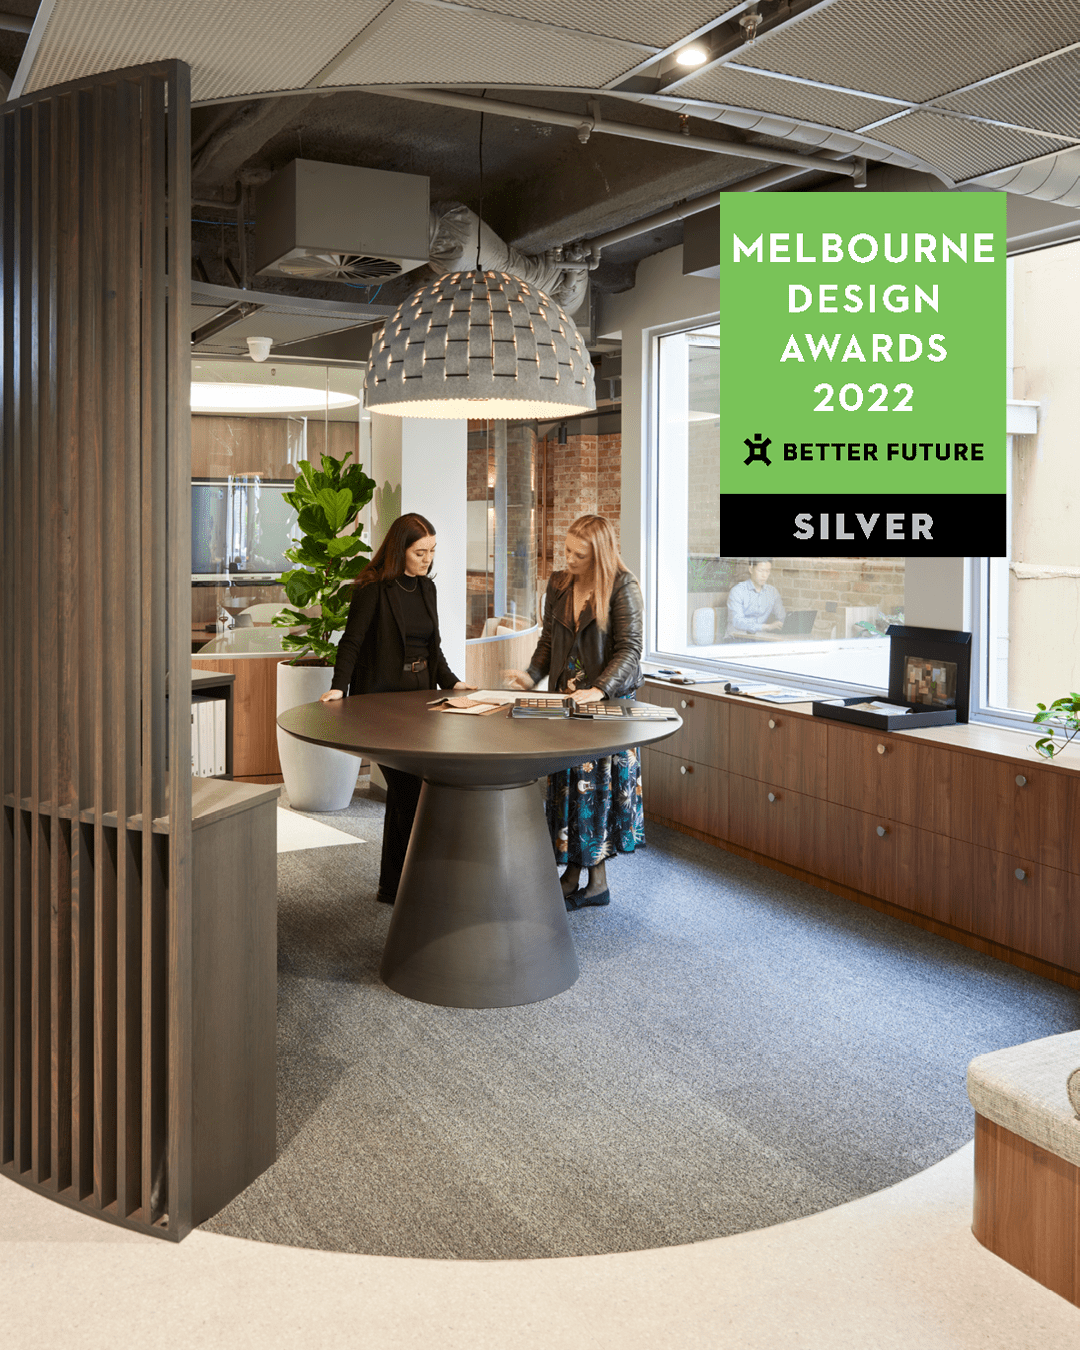 Melbourne design awards - silver - Axiom Melbourne